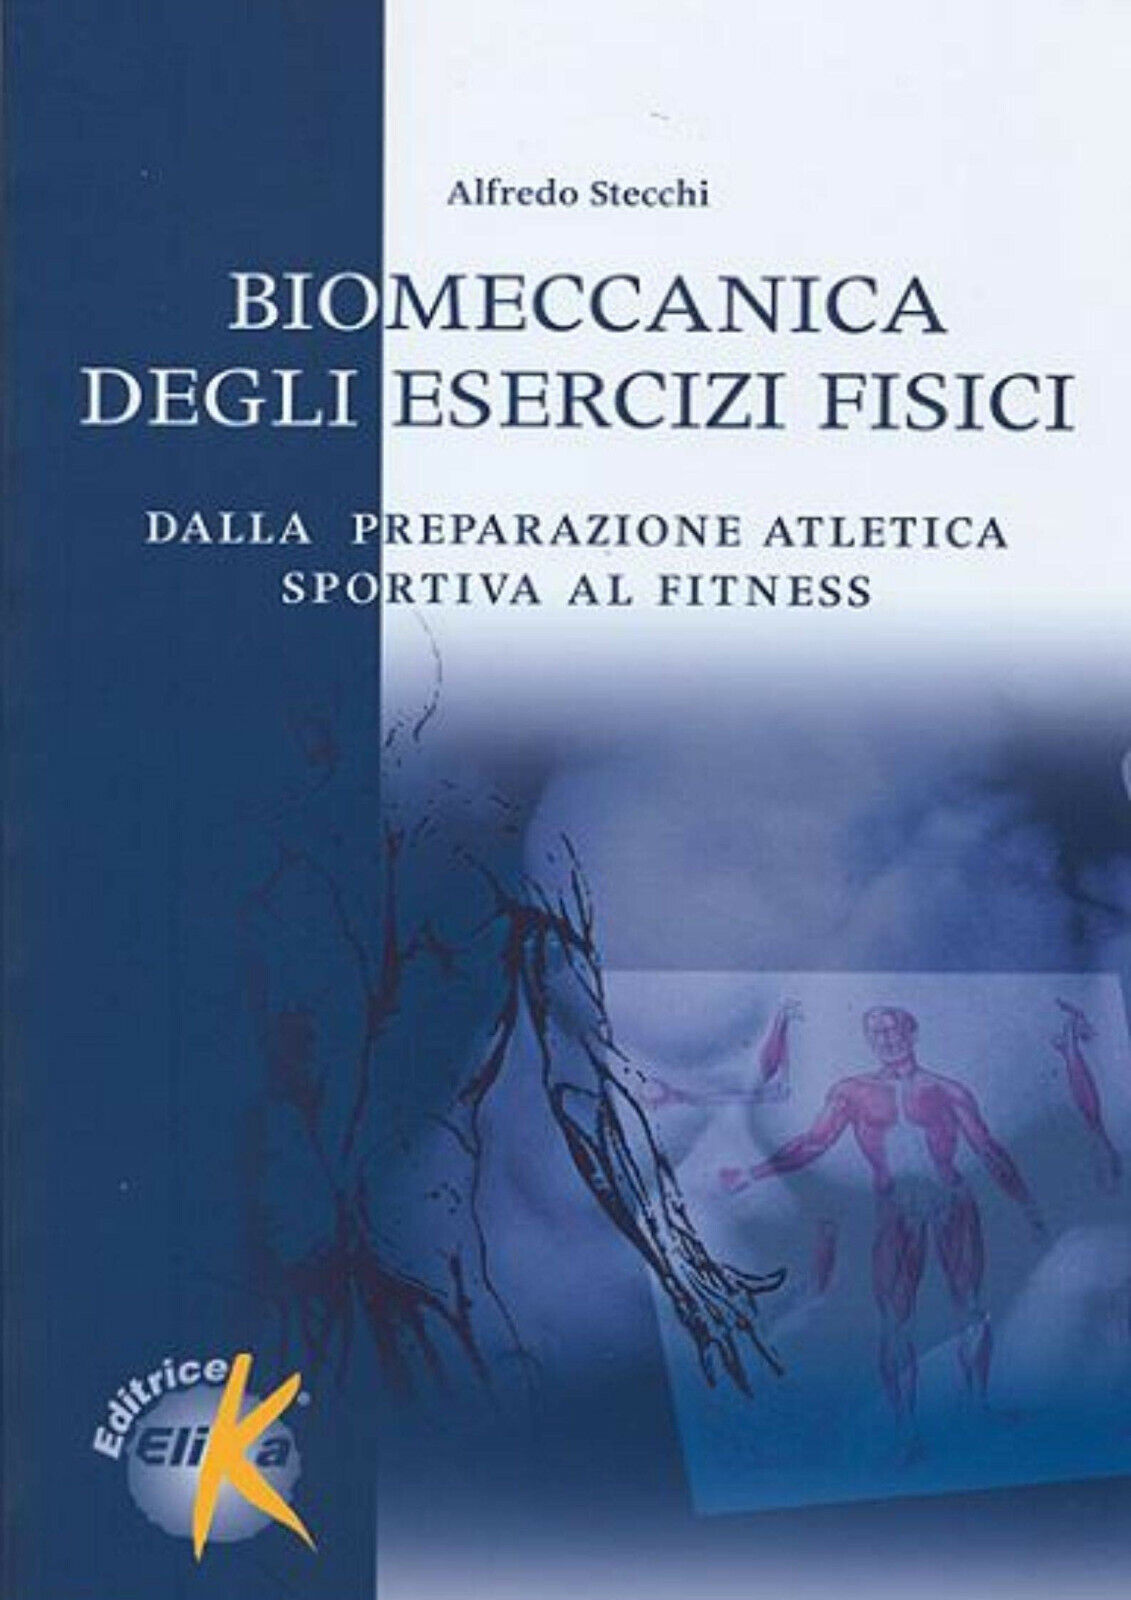 Biomeccanica degli esercizi fisici - Alfredo Stecchi - Elika, 2004 libro usato